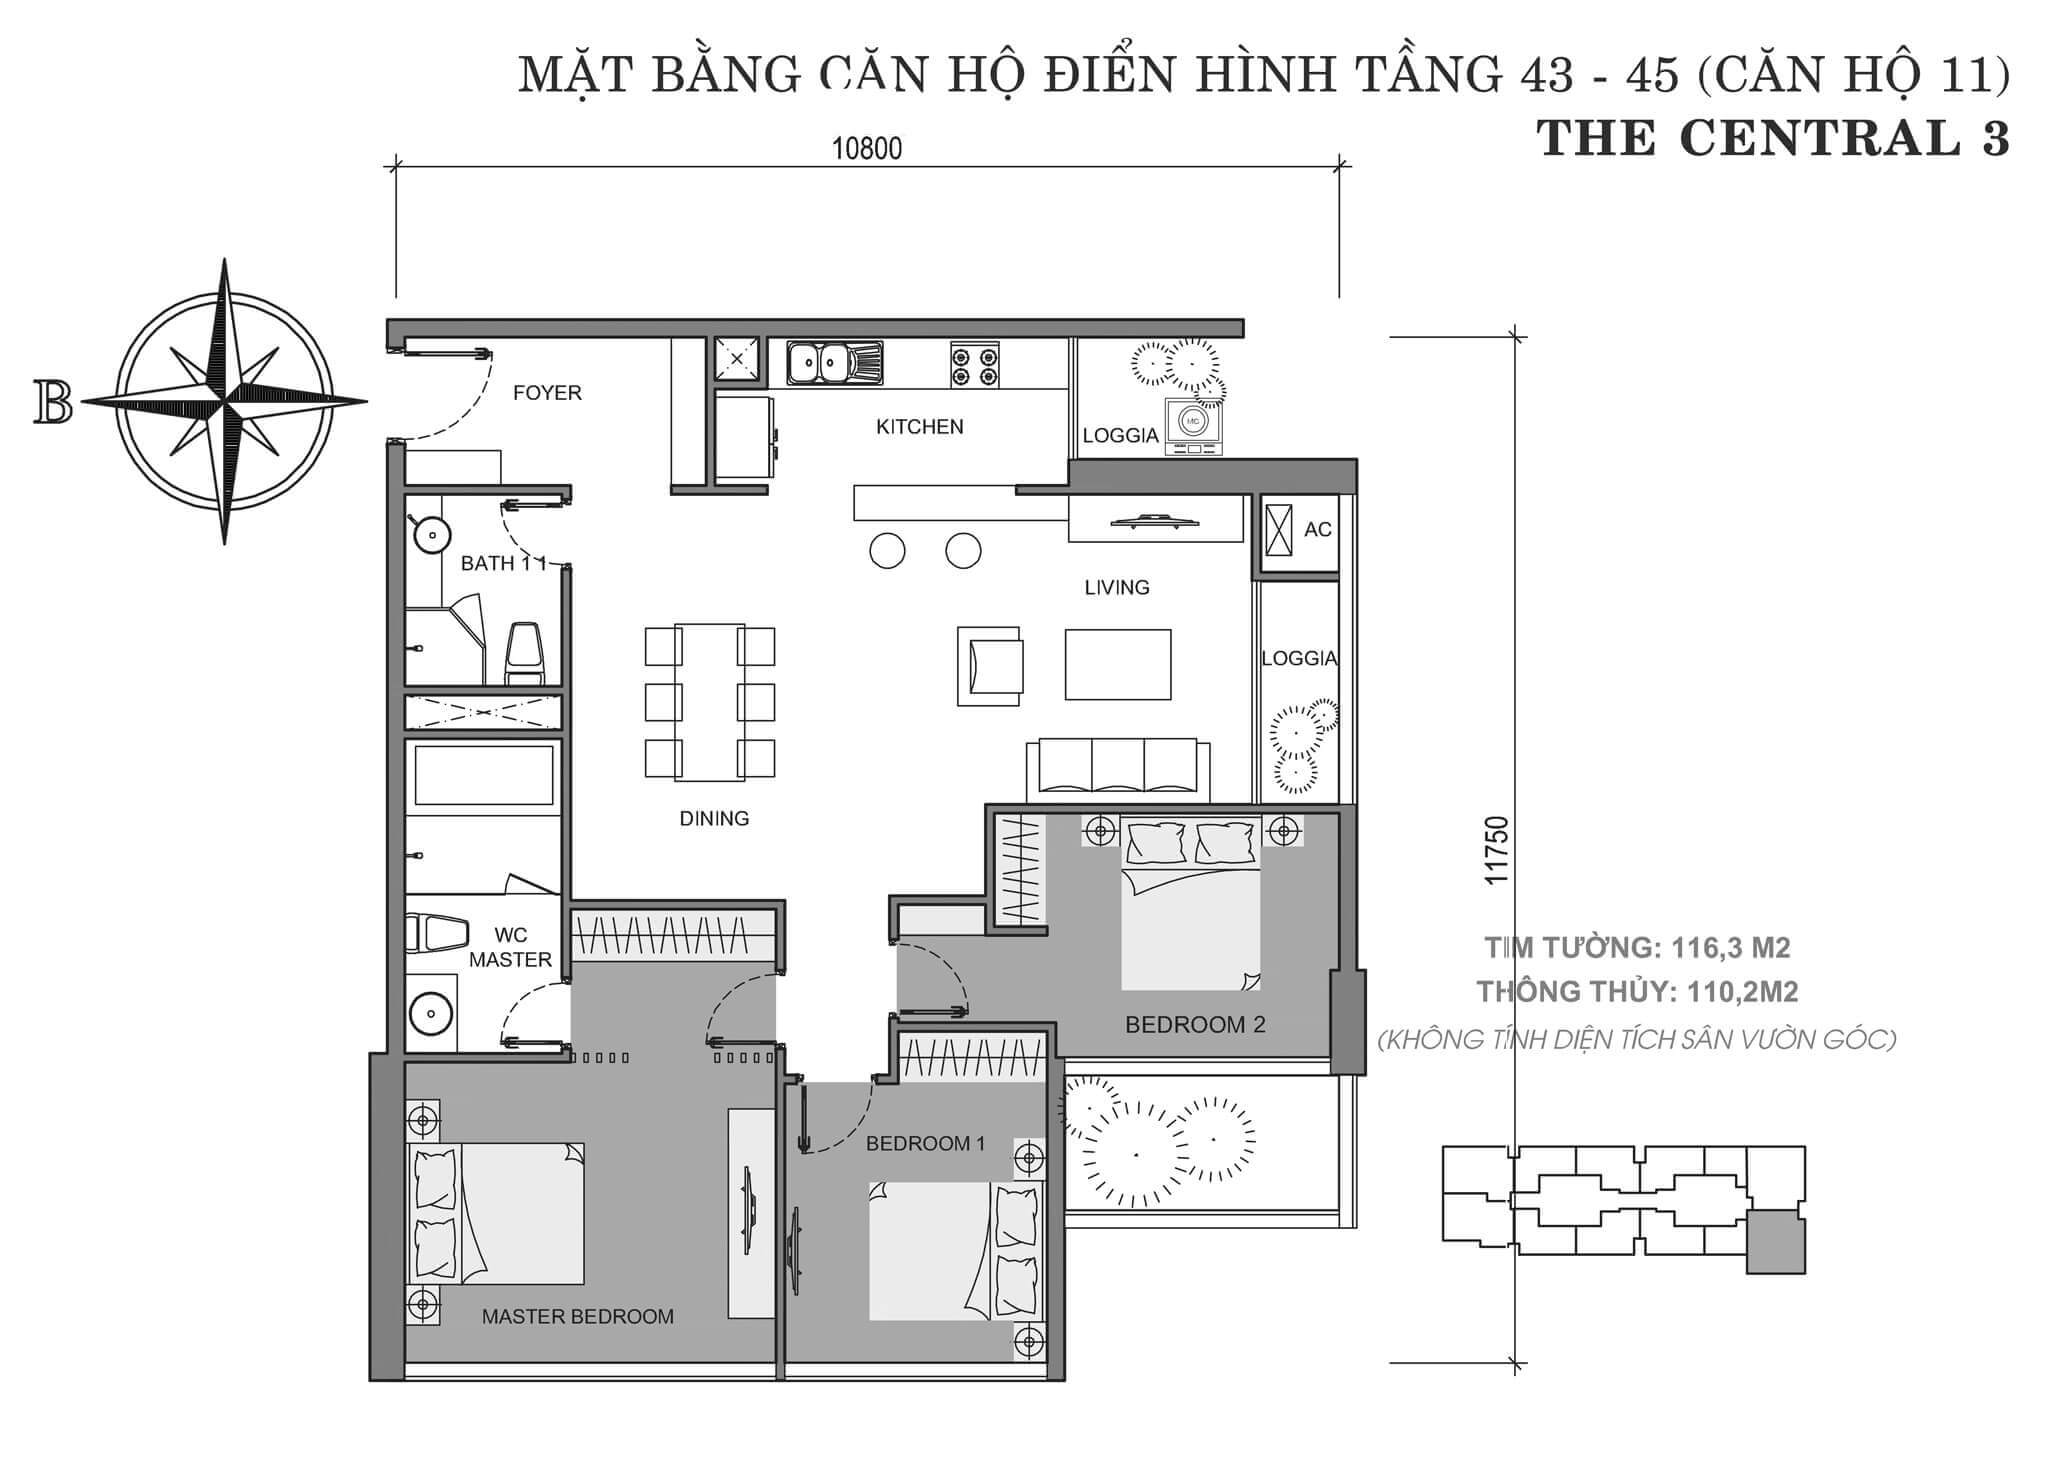 layout căn hộ số 11 tòa Central 3 tầng 43-45